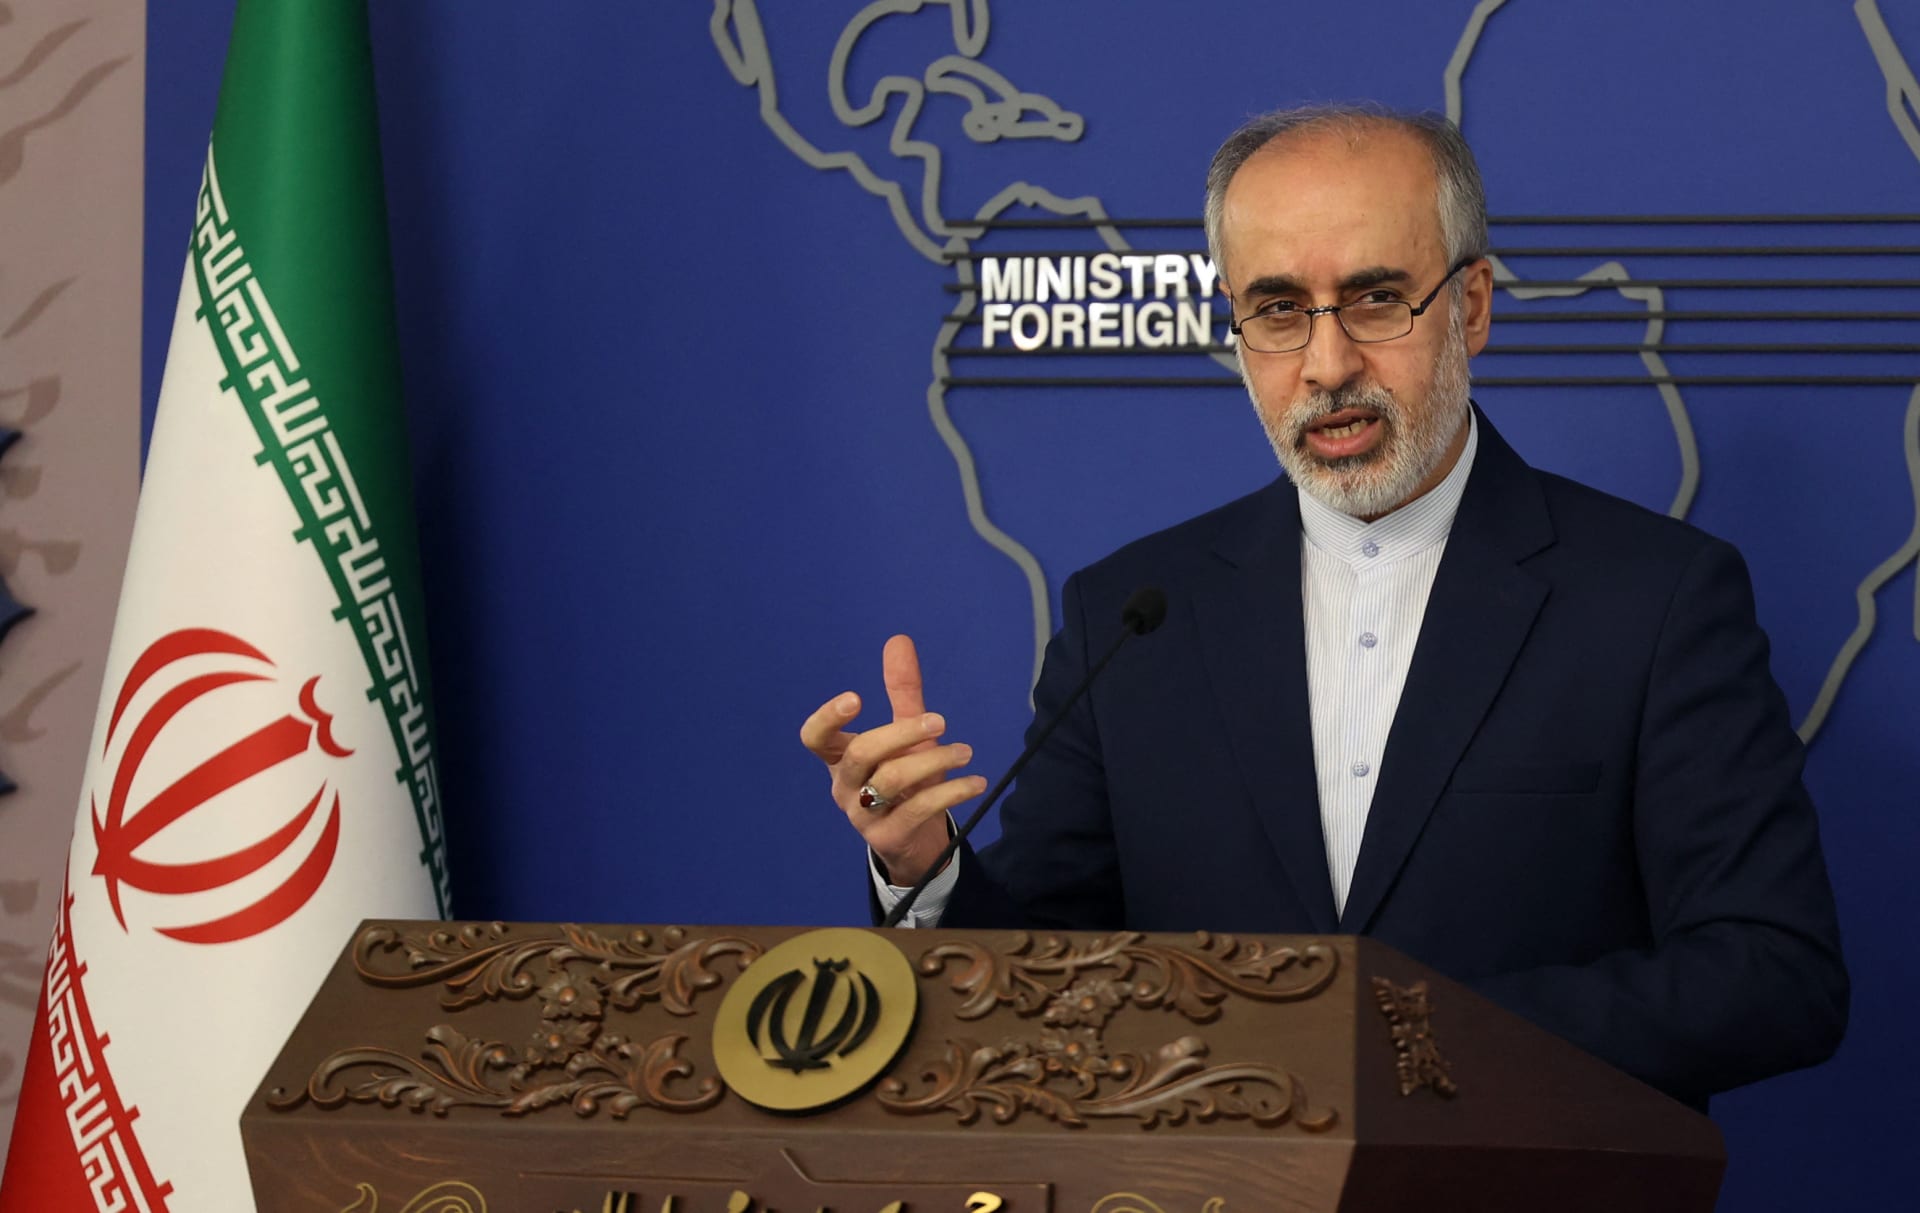 متحدث الخارجية الإيرانية يعلق على وقوع هجمات ضد المصالح الأمريكية بالمنطقة..ويؤكد: "أنتظر خطاب حسن نصرالله"